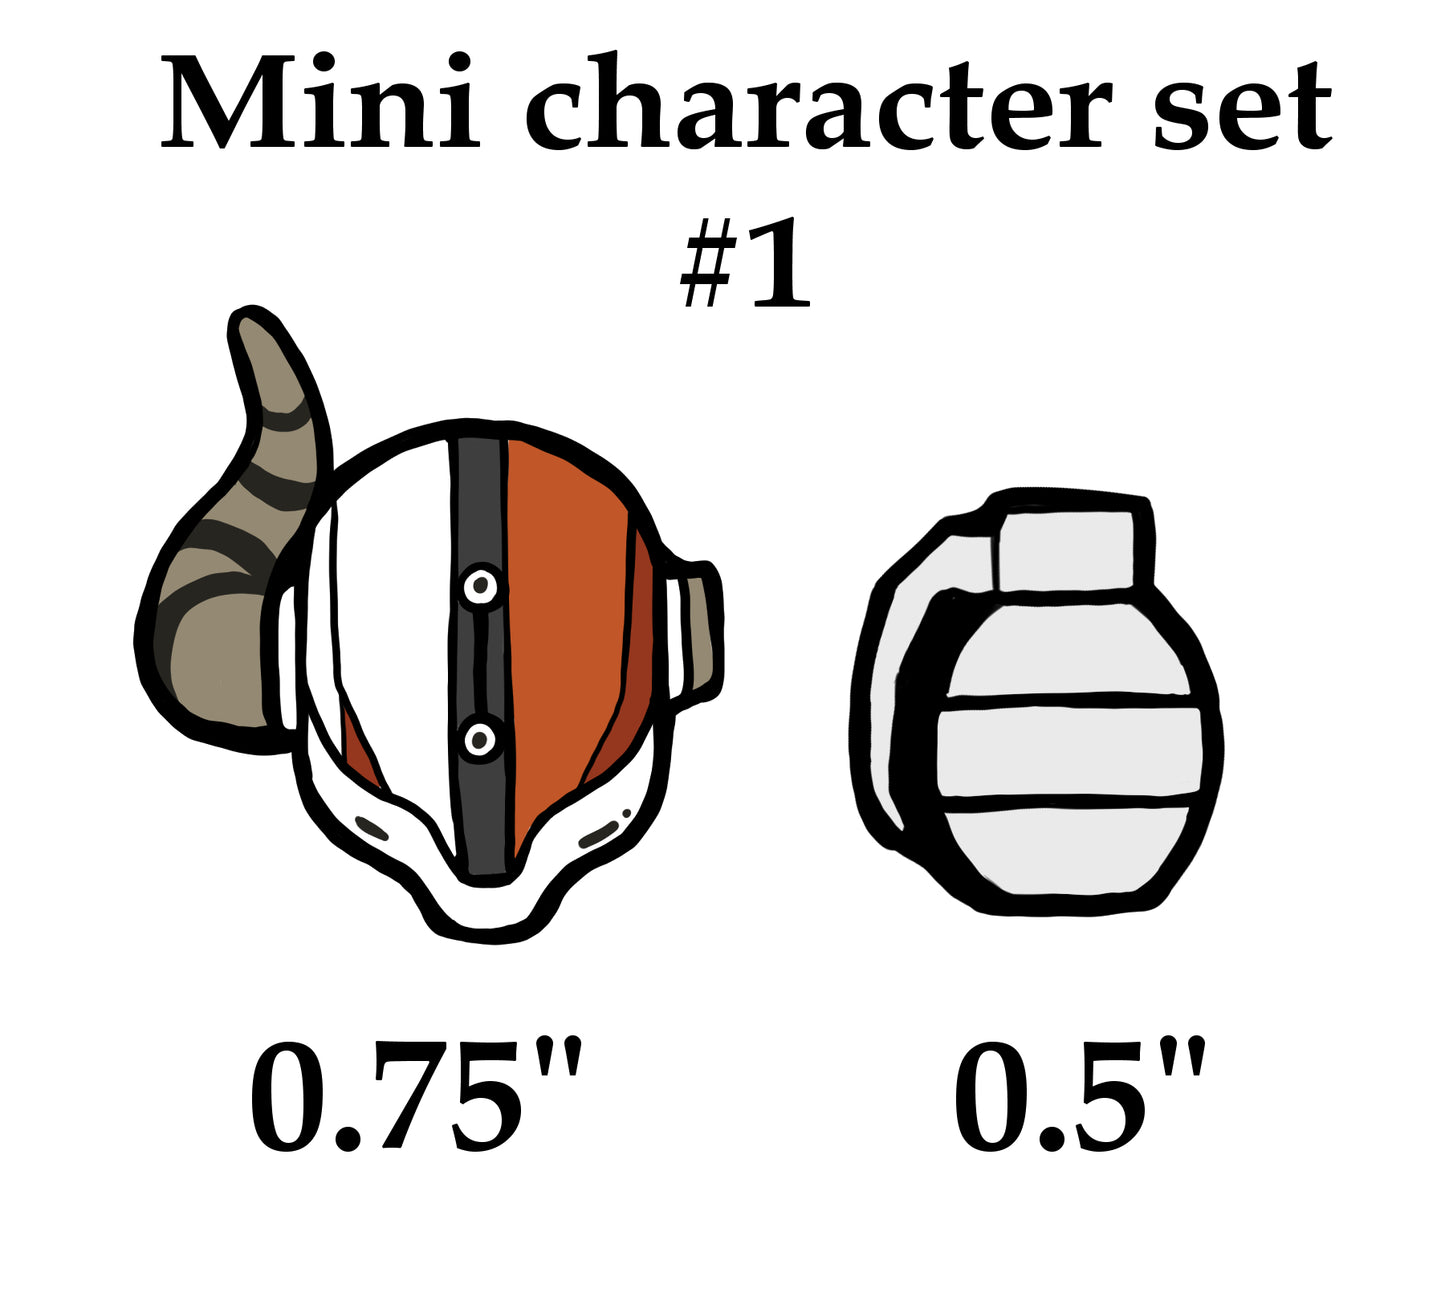 Mini character pin set #1